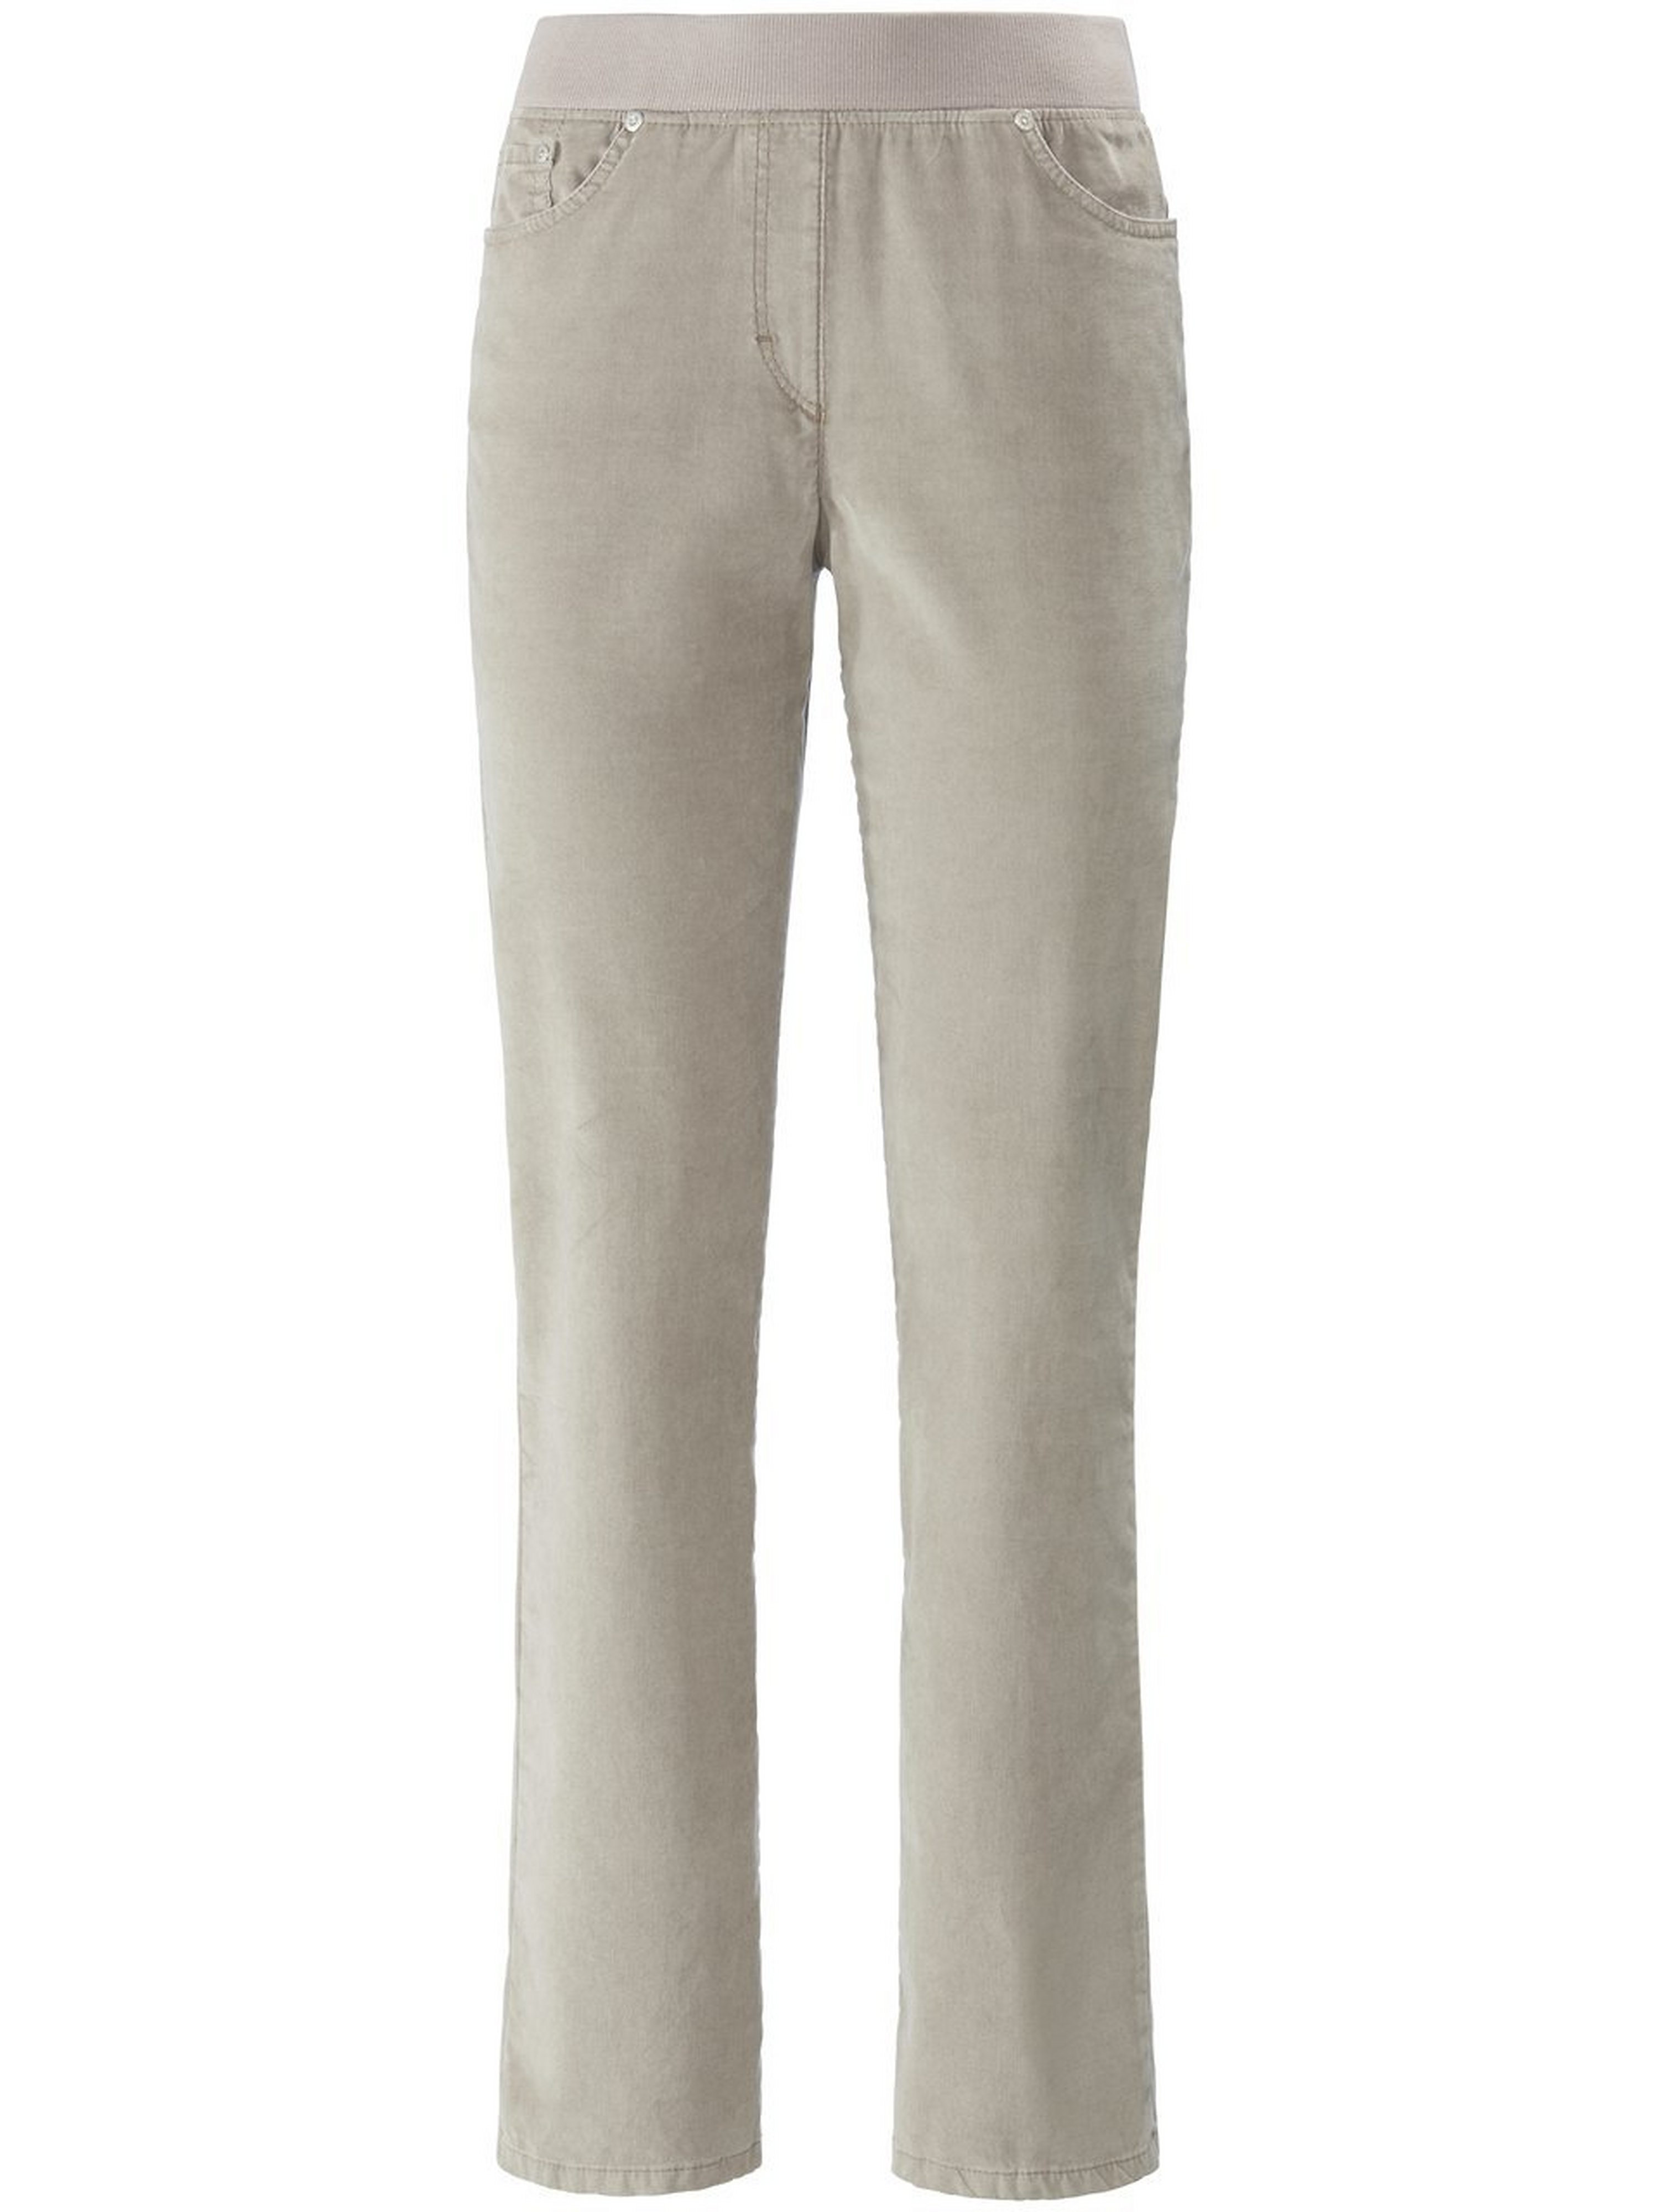 Le pantalon modèle Carina en velours milleraies  Raphaela by Brax beige